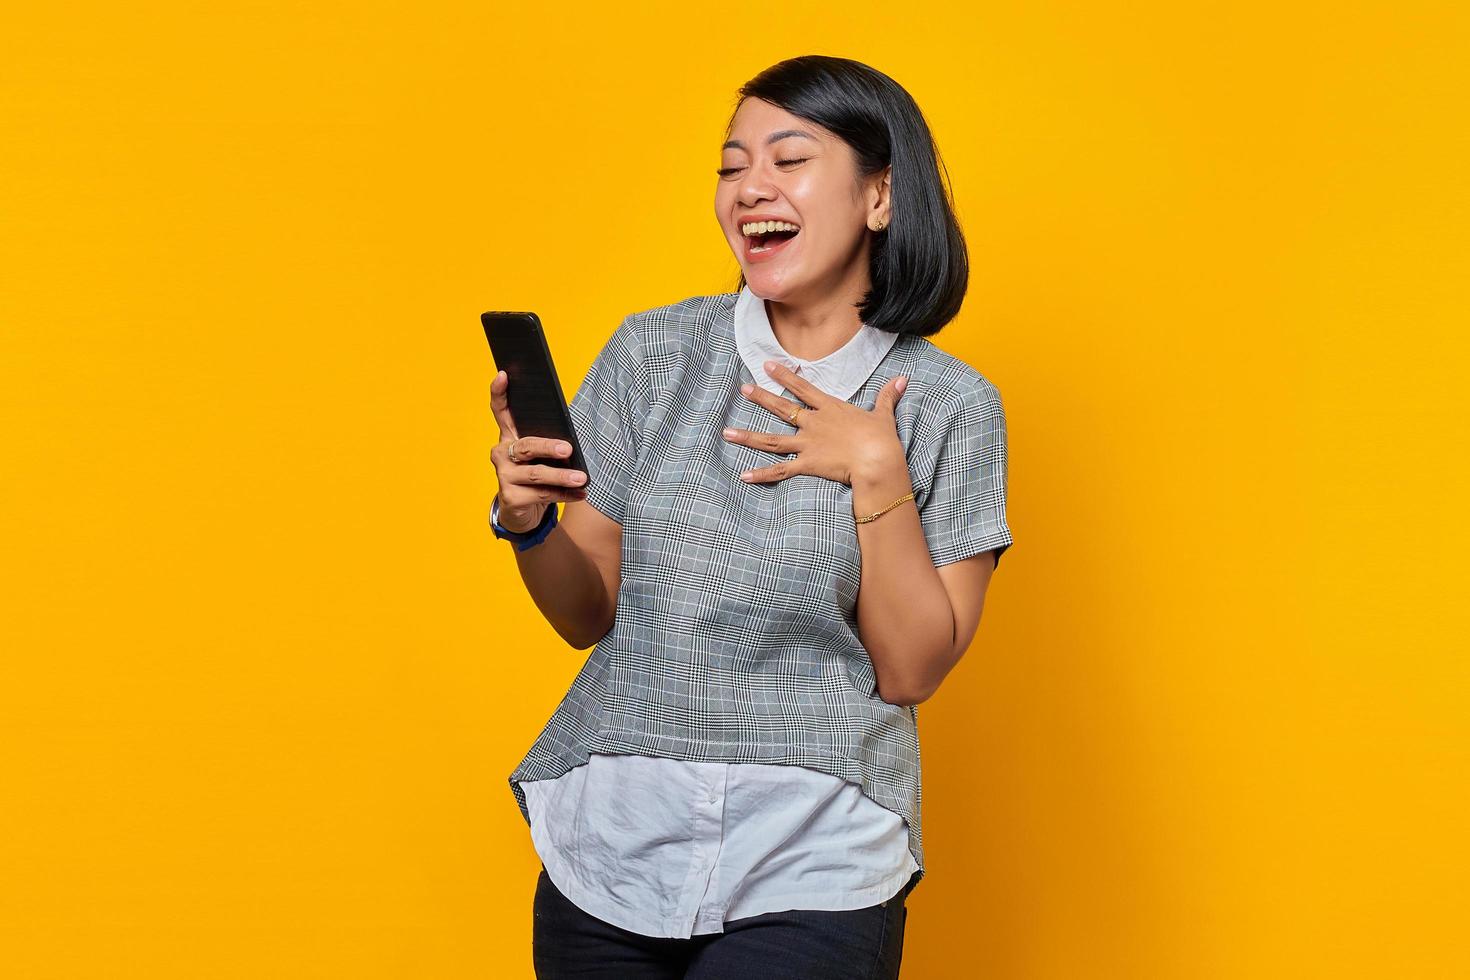 allegra giovane donna asiatica che tiene il telefono cellulare con la bocca aperta su sfondo giallo foto